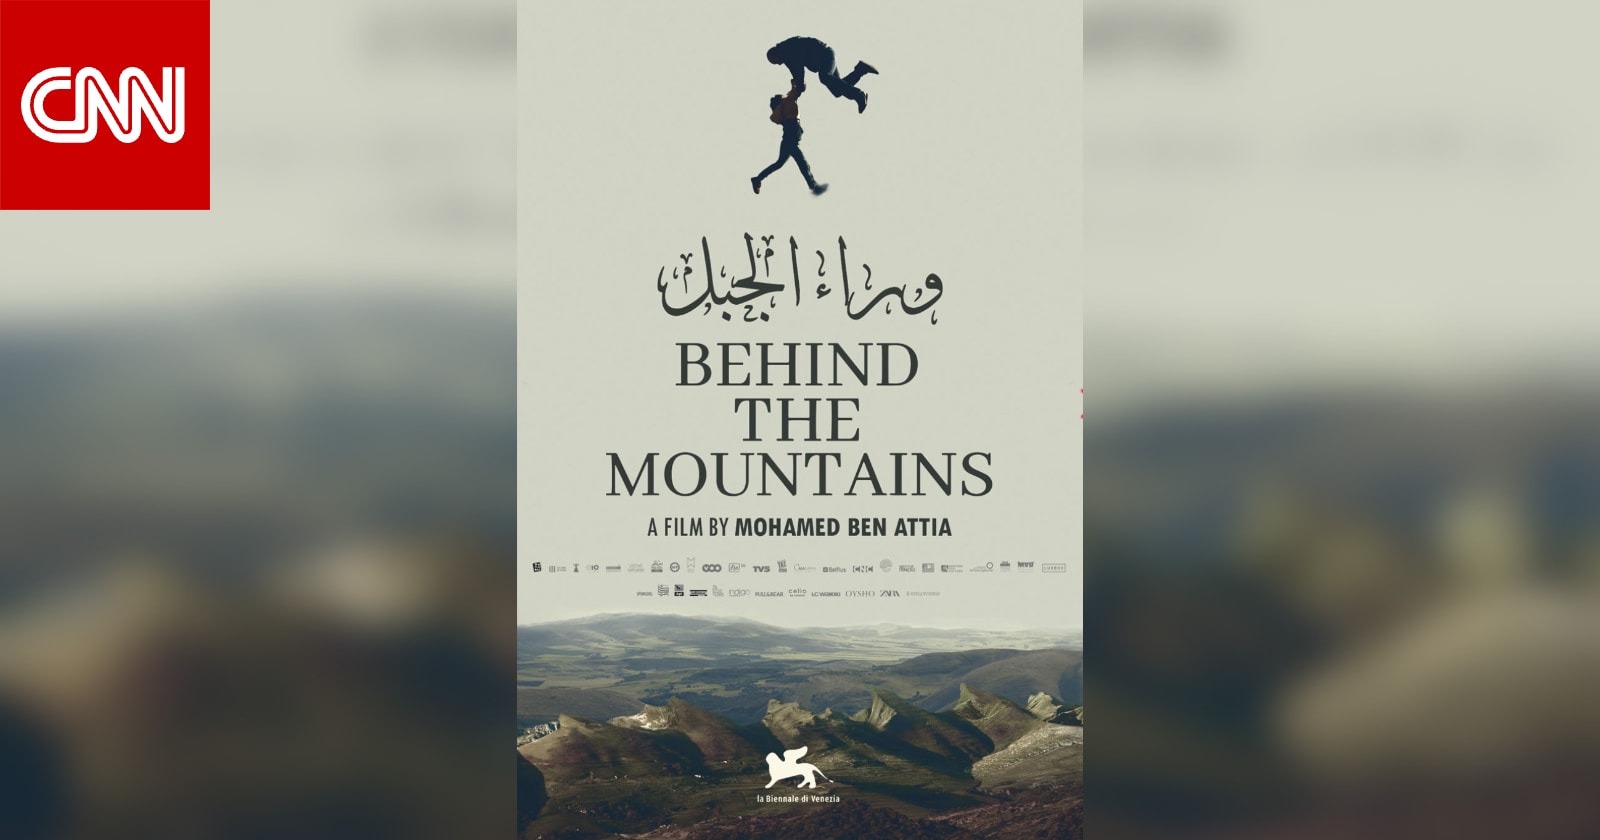 المخرج محمد بن عطية عن فيلم "وراء الجبل": أن تطير يعني أن تتحرر